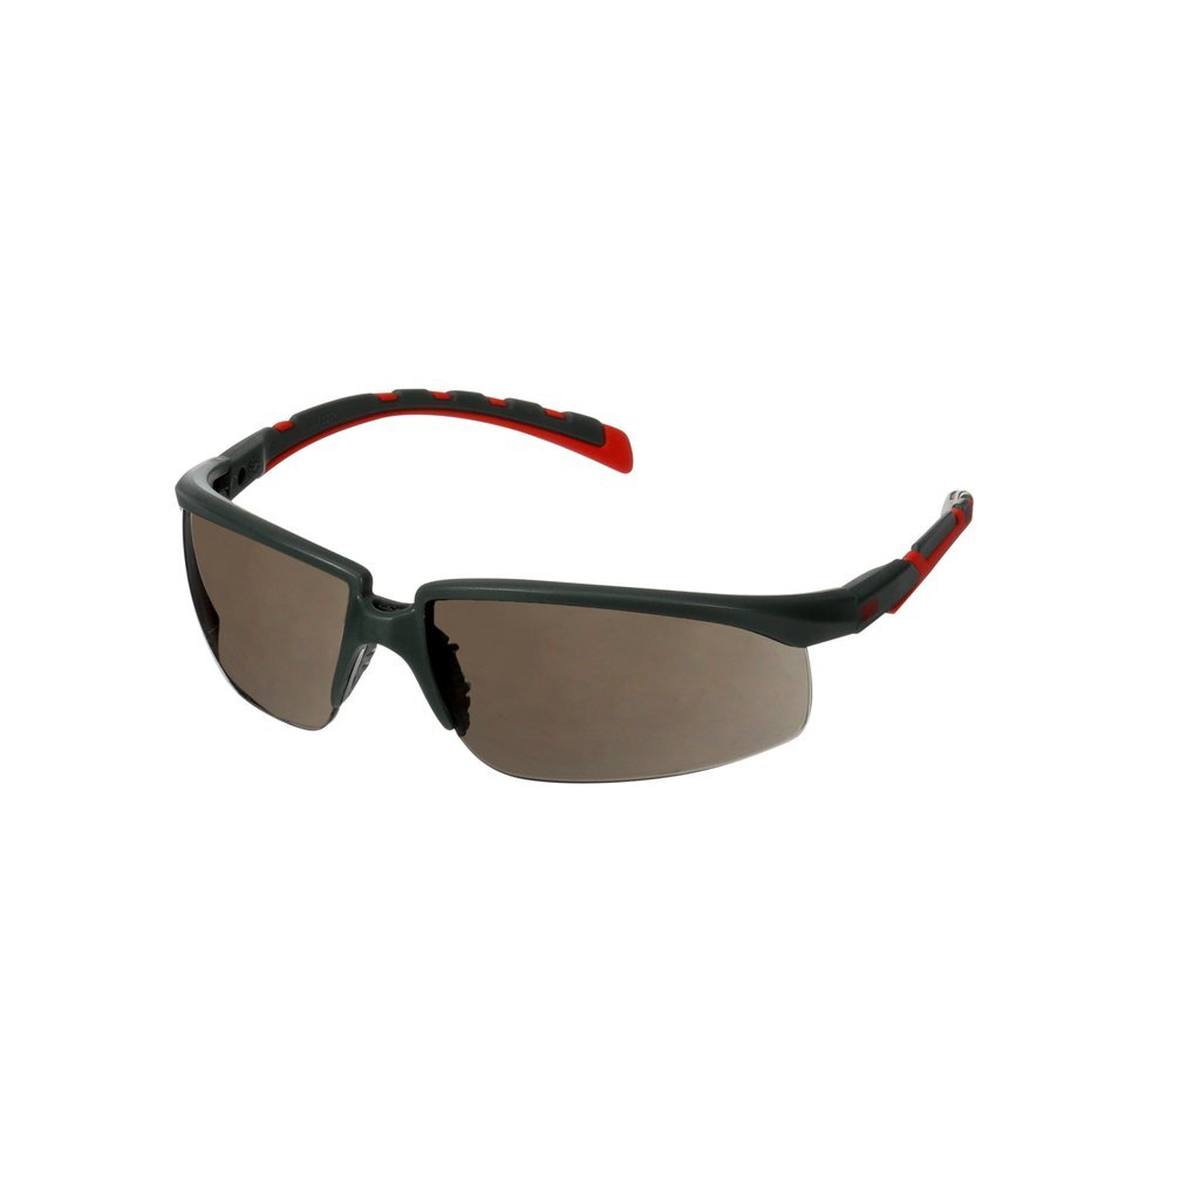 3M Gafas de protección Solus 2000, patillas gris/rojo, revestimiento antivaho Scotchgard (K&amp;N), lente transparente, ángulo ajustable, S2001SGAF-RED-EU